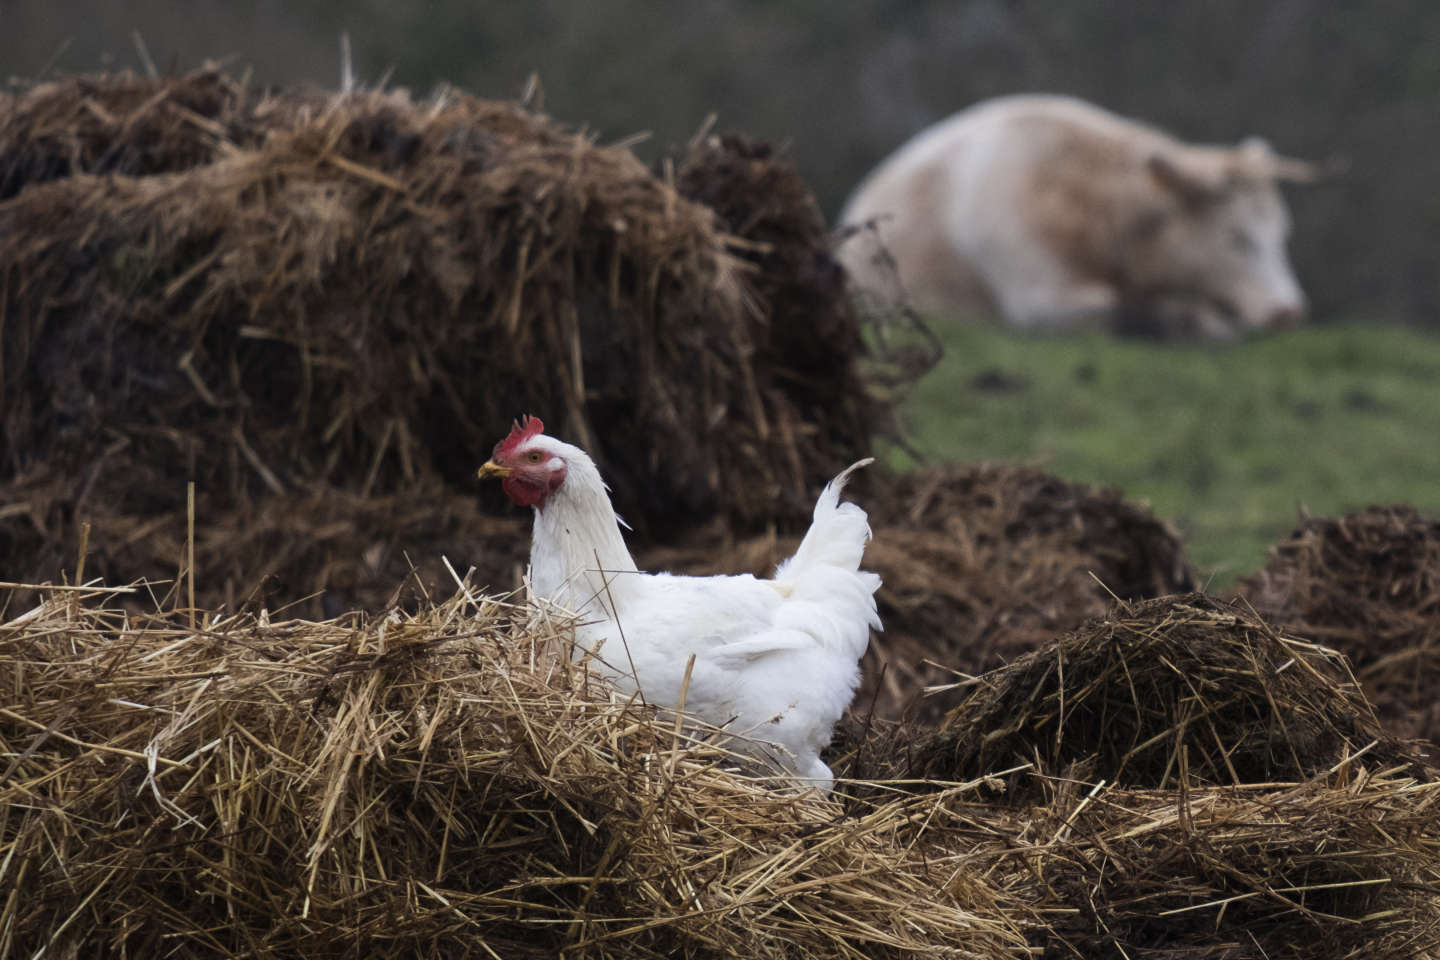 Le niveau de risque de la grippe aviaire désormais « élevé » en France, obligeant les éleveurs à confiner leurs volailles